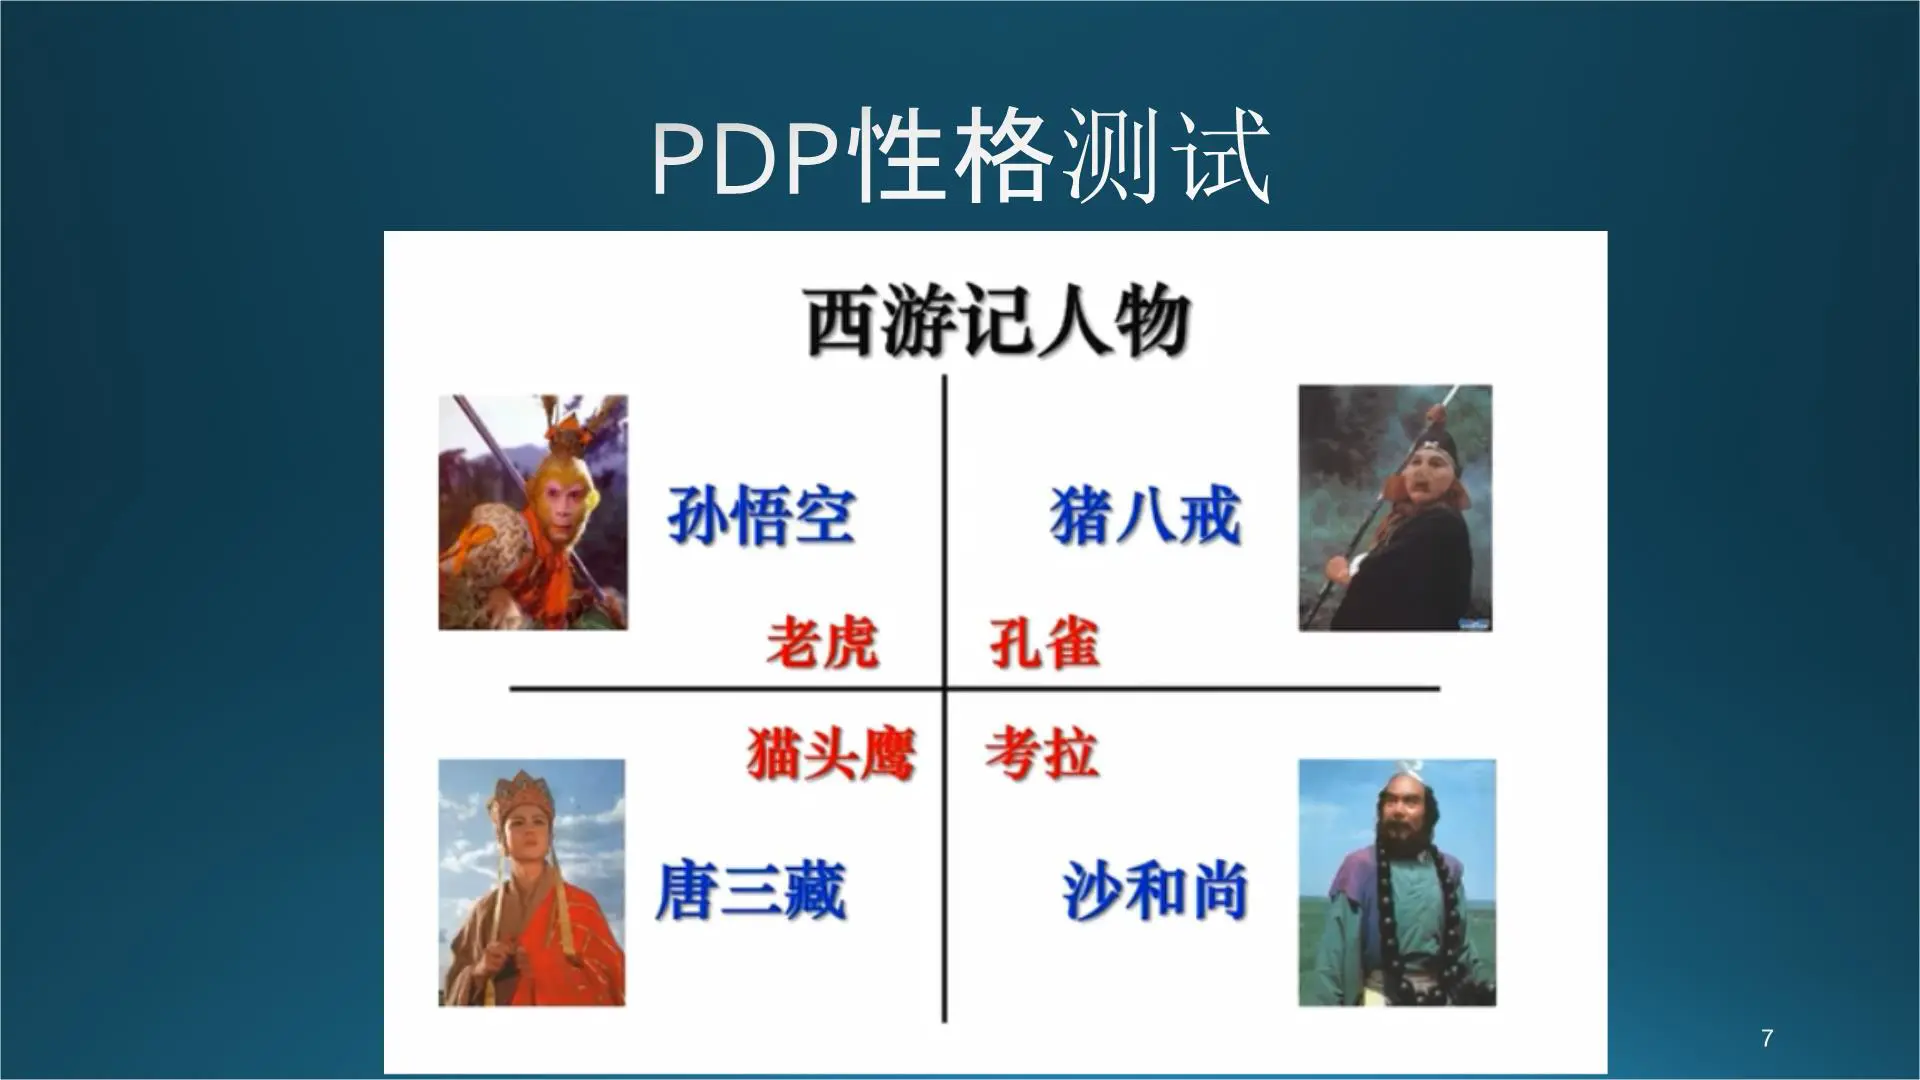 PDP性格测试培训课件插图7